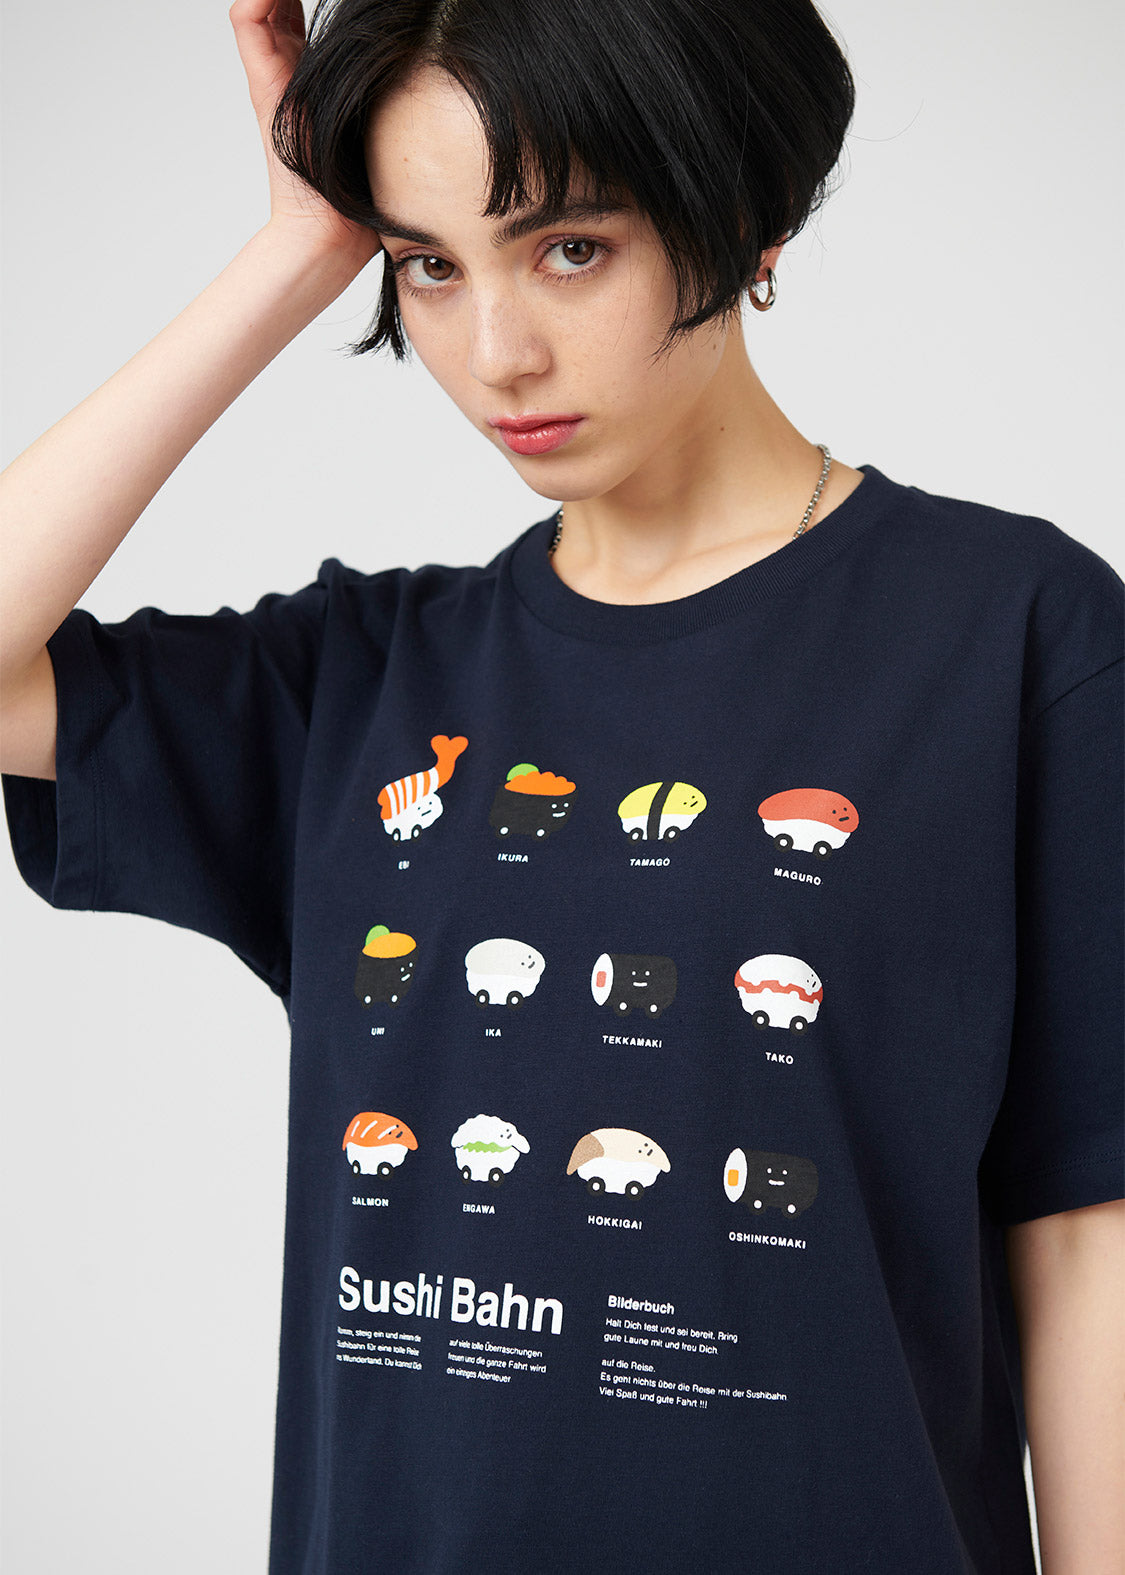 Sushi Train Zukan Navy